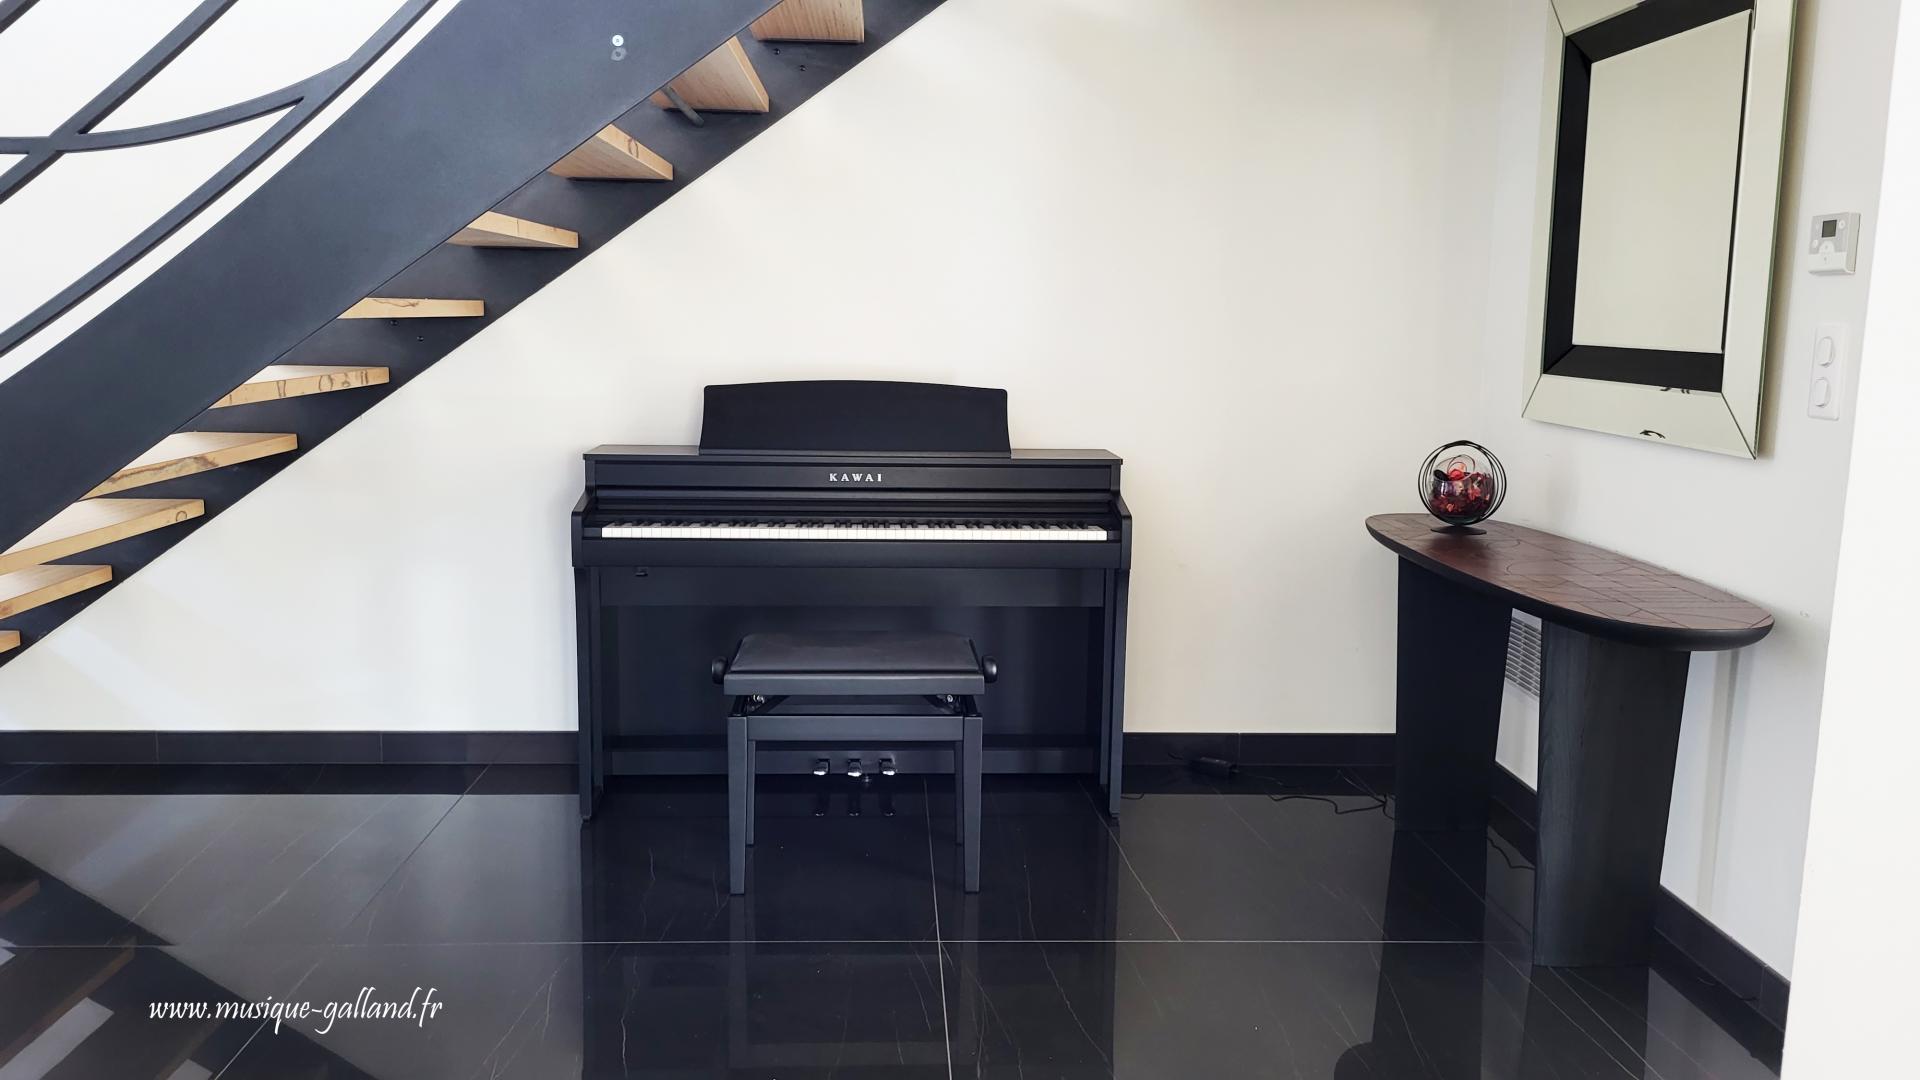 Piano numérique KAWAI CN301-B noir